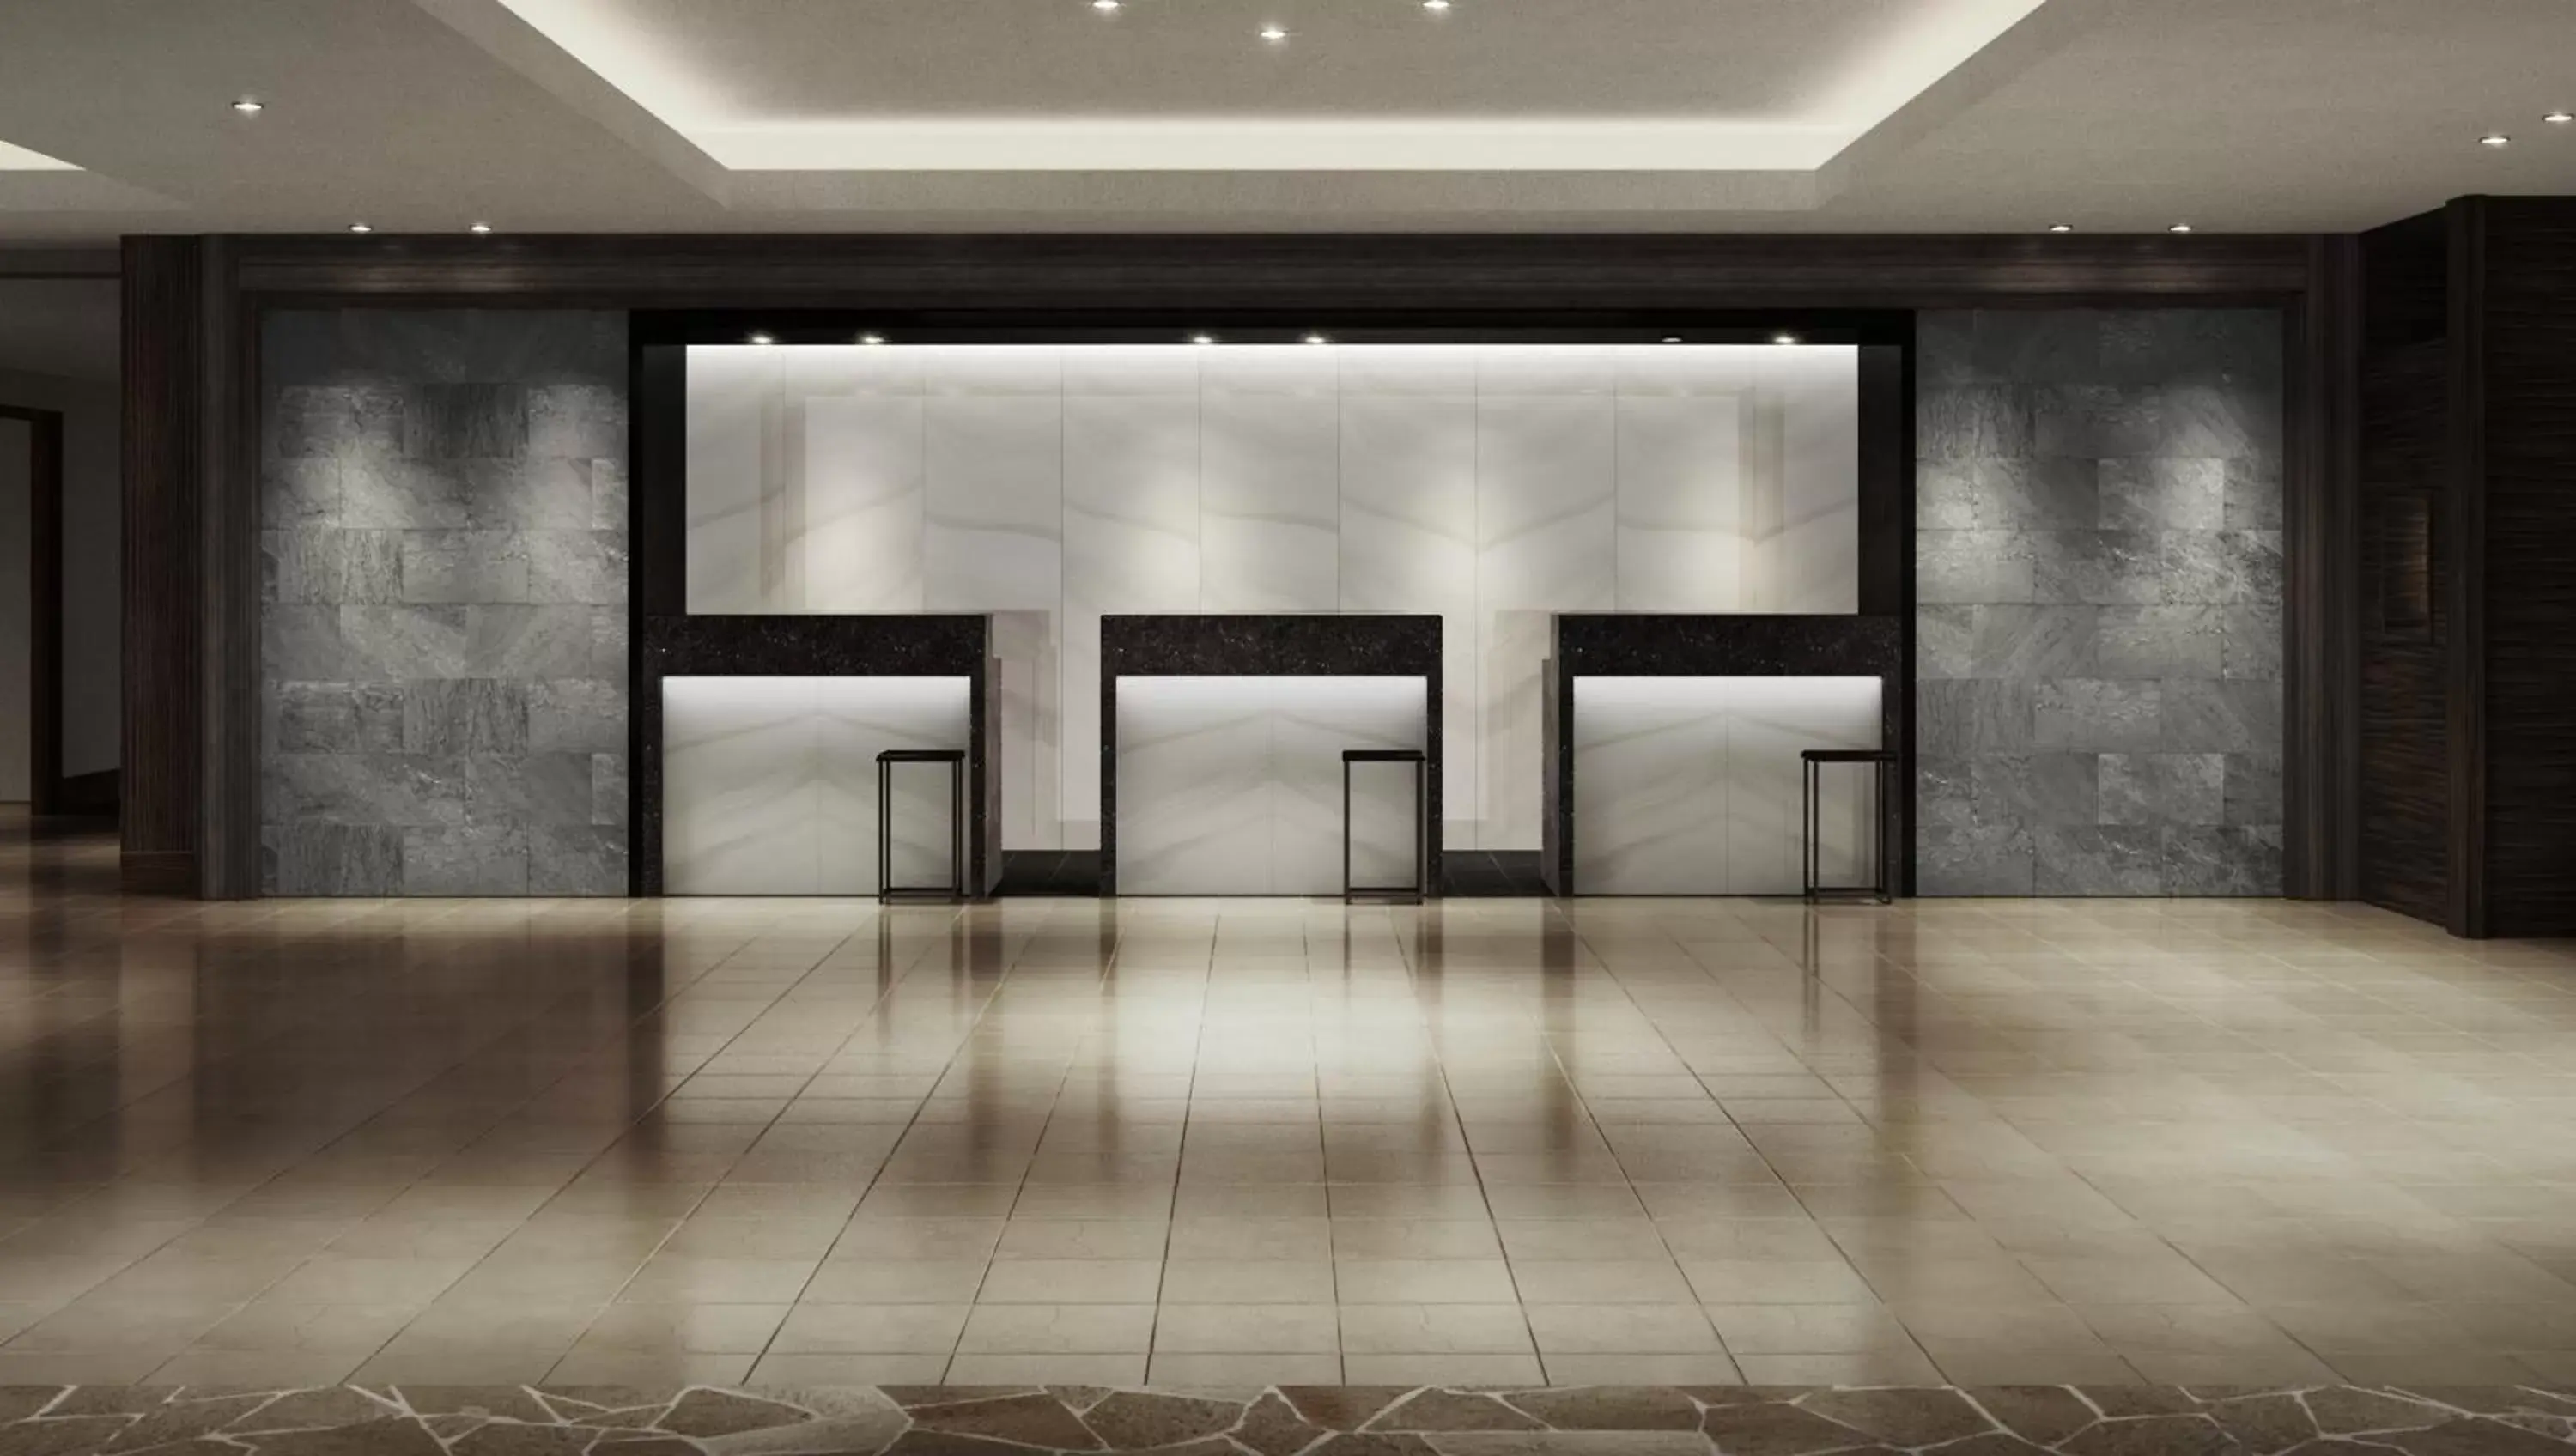 Lobby or reception in Nanki-Shirahama Marriott Hotel